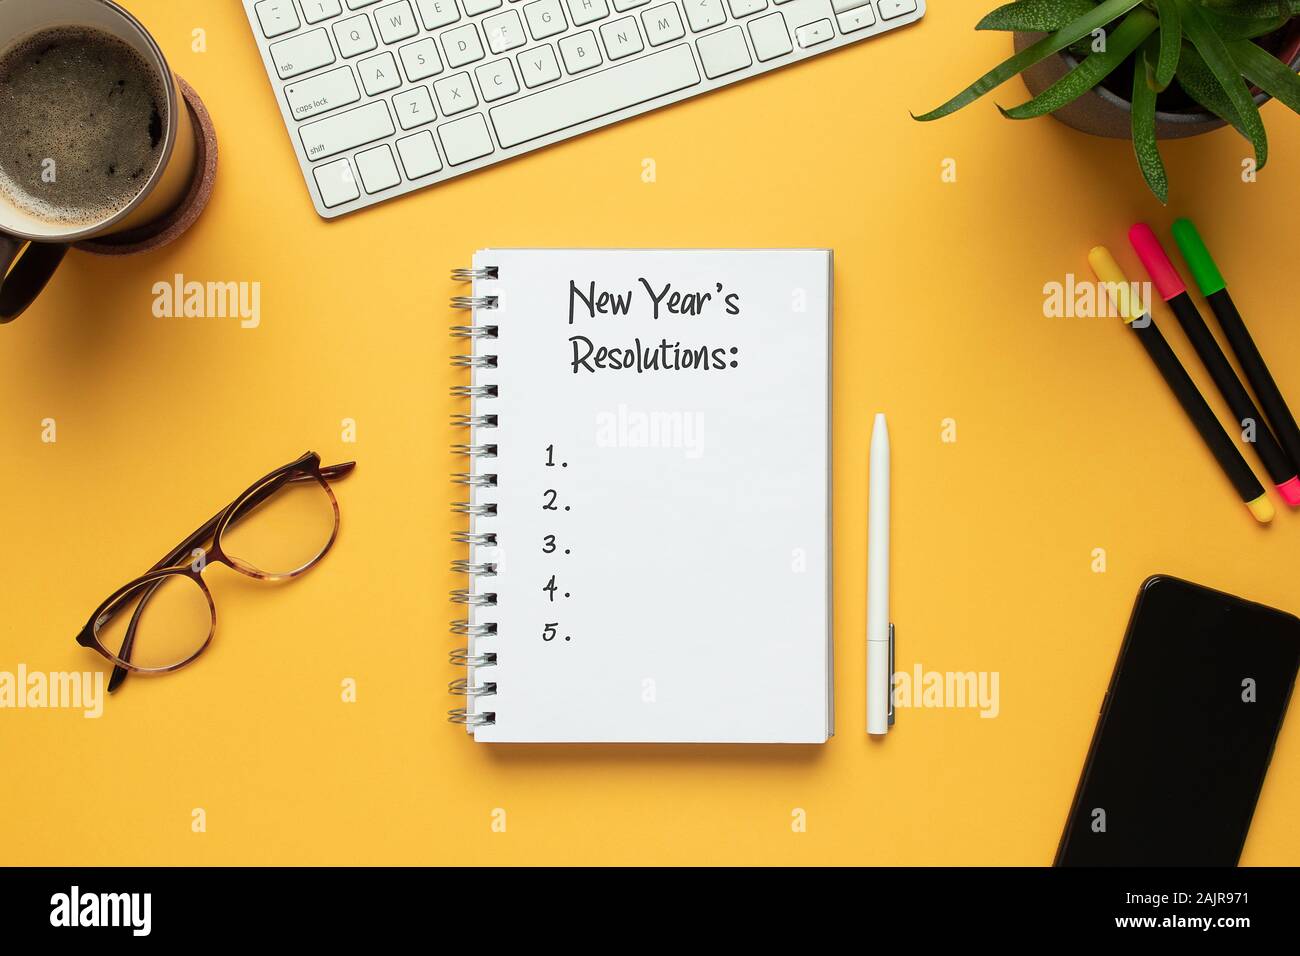 Foto di stock di 2020 anno nuovo notebook con elenco di risoluzioni e oggetti su sfondo giallo Foto Stock